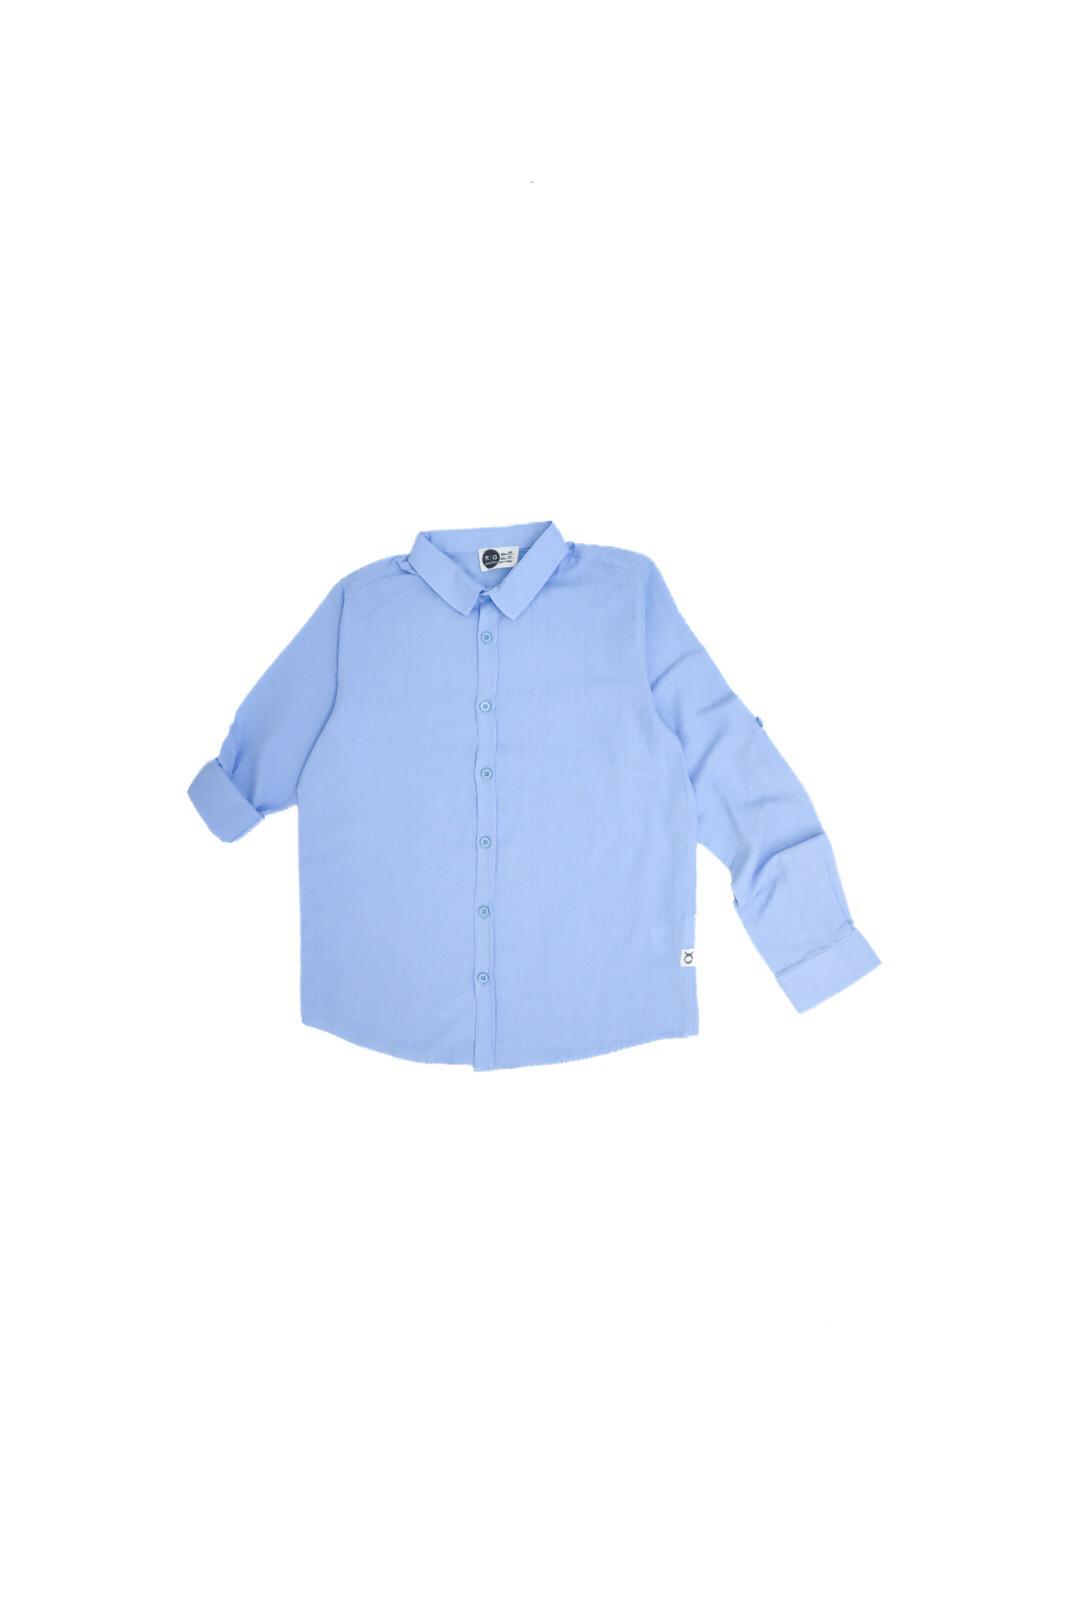 RG Light Blue Long Sleeve Linen Shirt